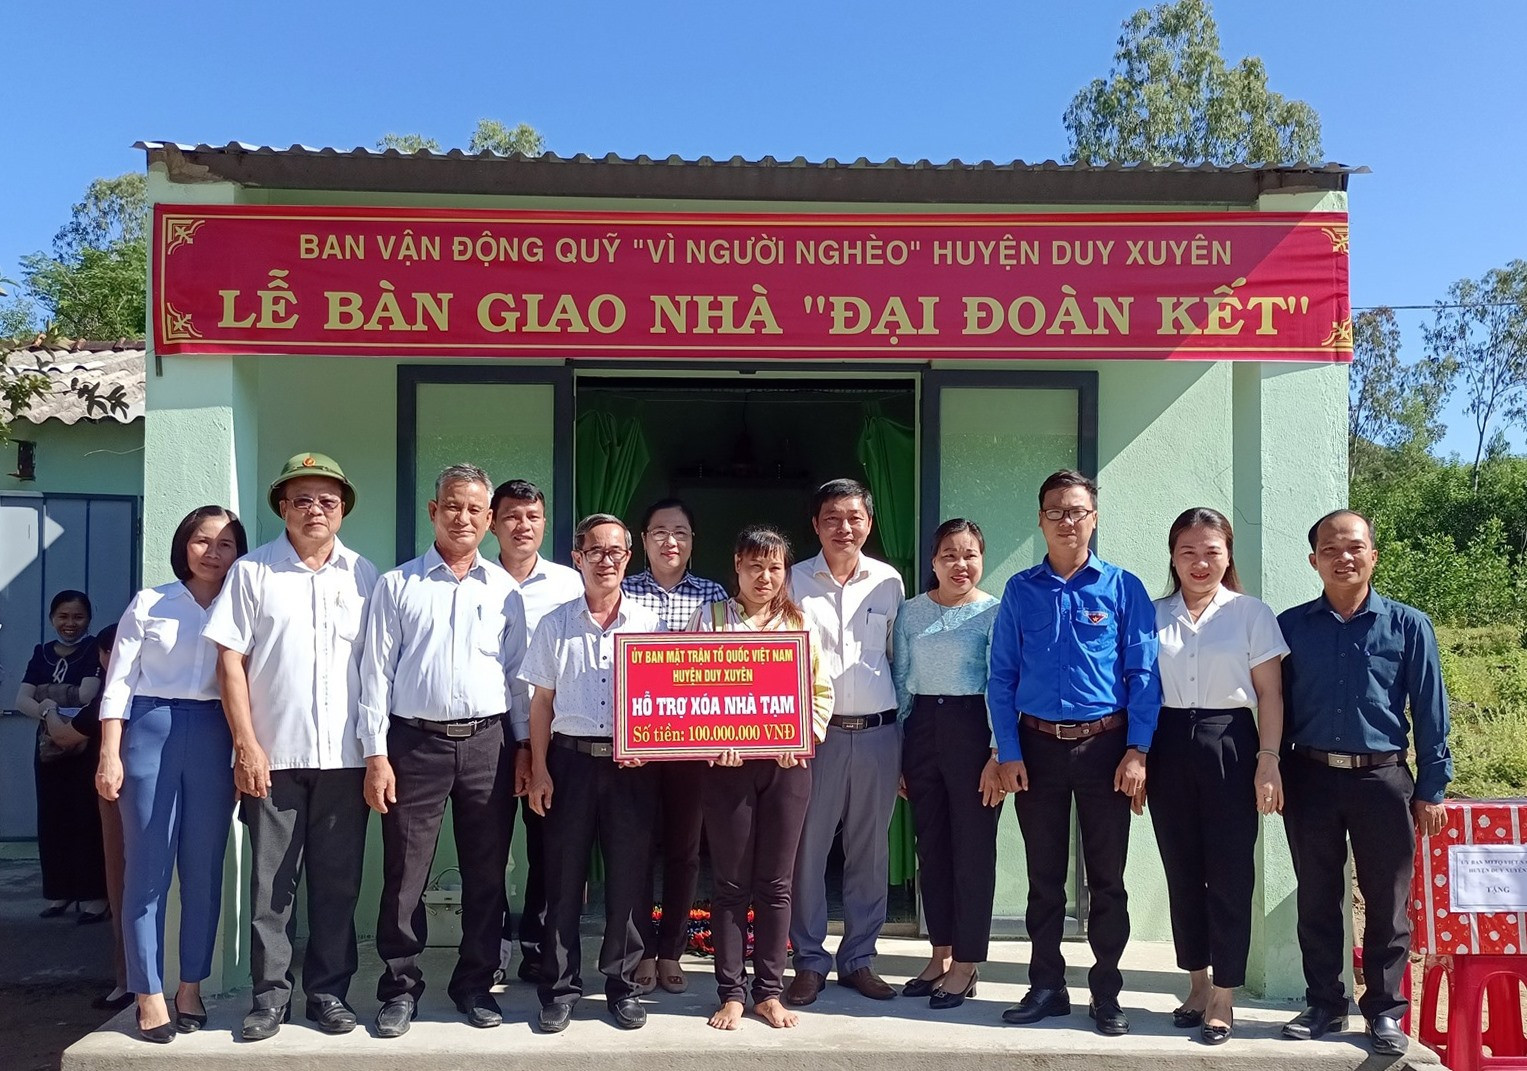 Ủy ban MTTQ Việt Nam huyện Duy Xuyên tổ chức bàn giao nhà đại đoàn kết cho hộ nghèo.